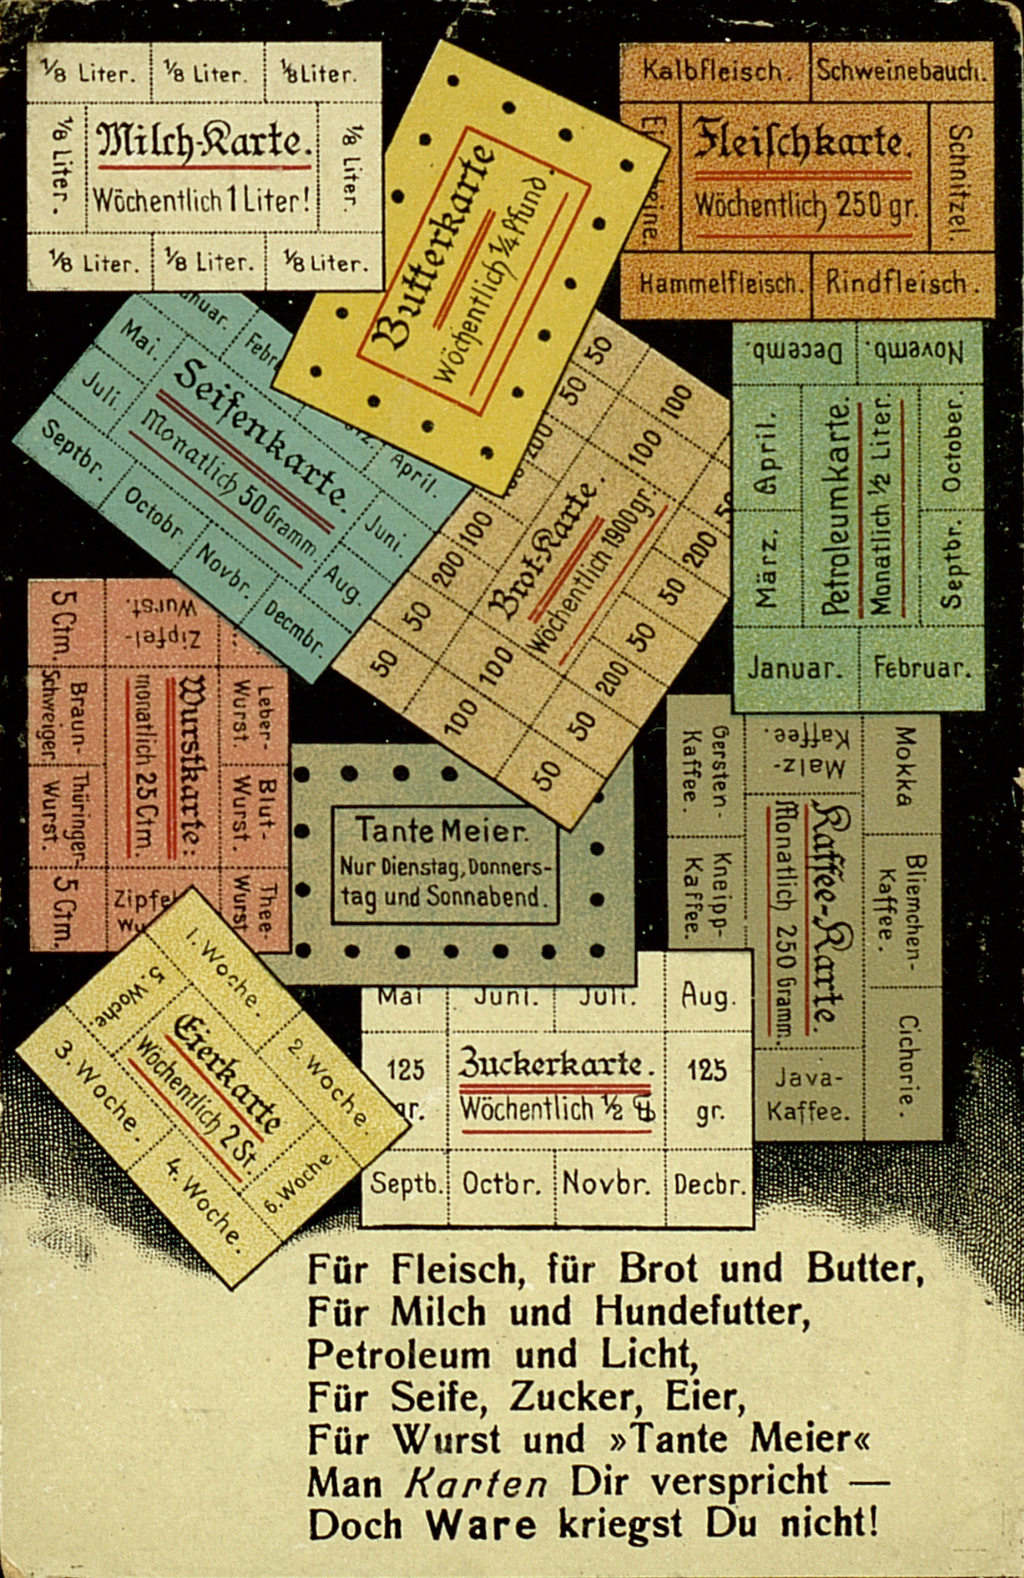 Bunte Propaganda-Postkarte zur Lebensmittelrationierung im Deutschen Reich während des Ersten Weltkriegs.